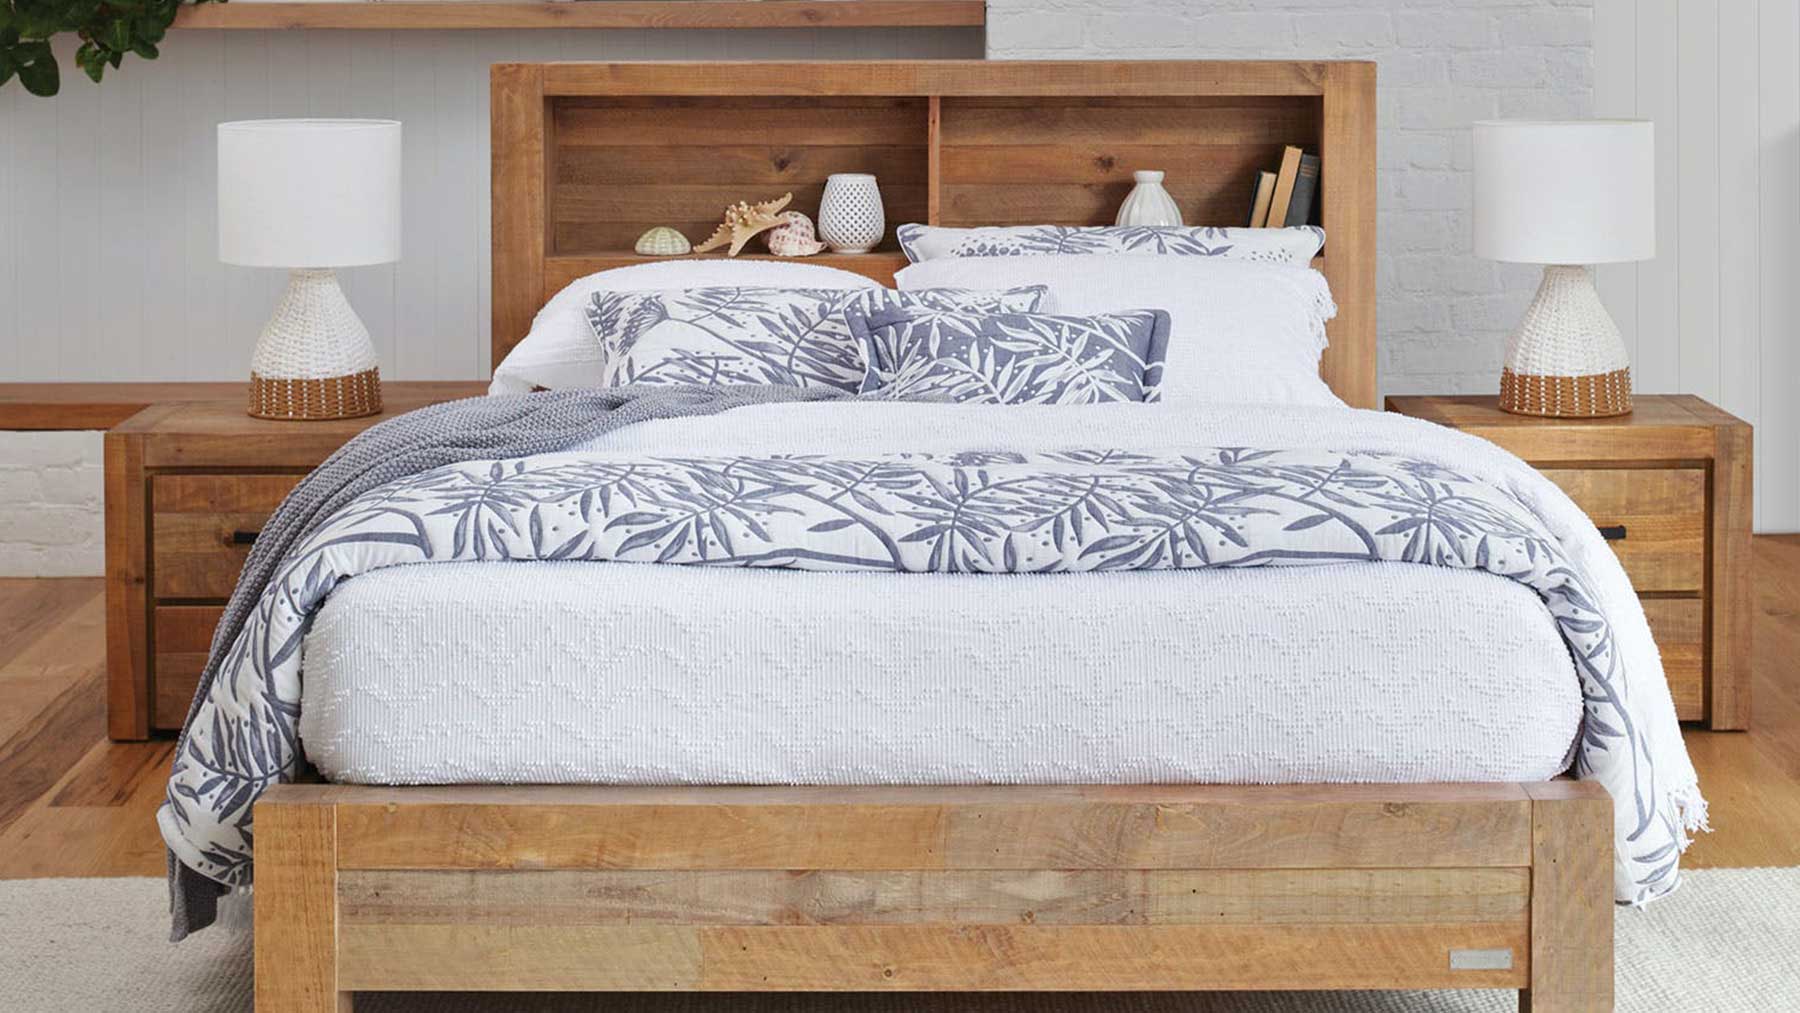 Giường ngủ gỗ chất lượng cao GHC-929-2